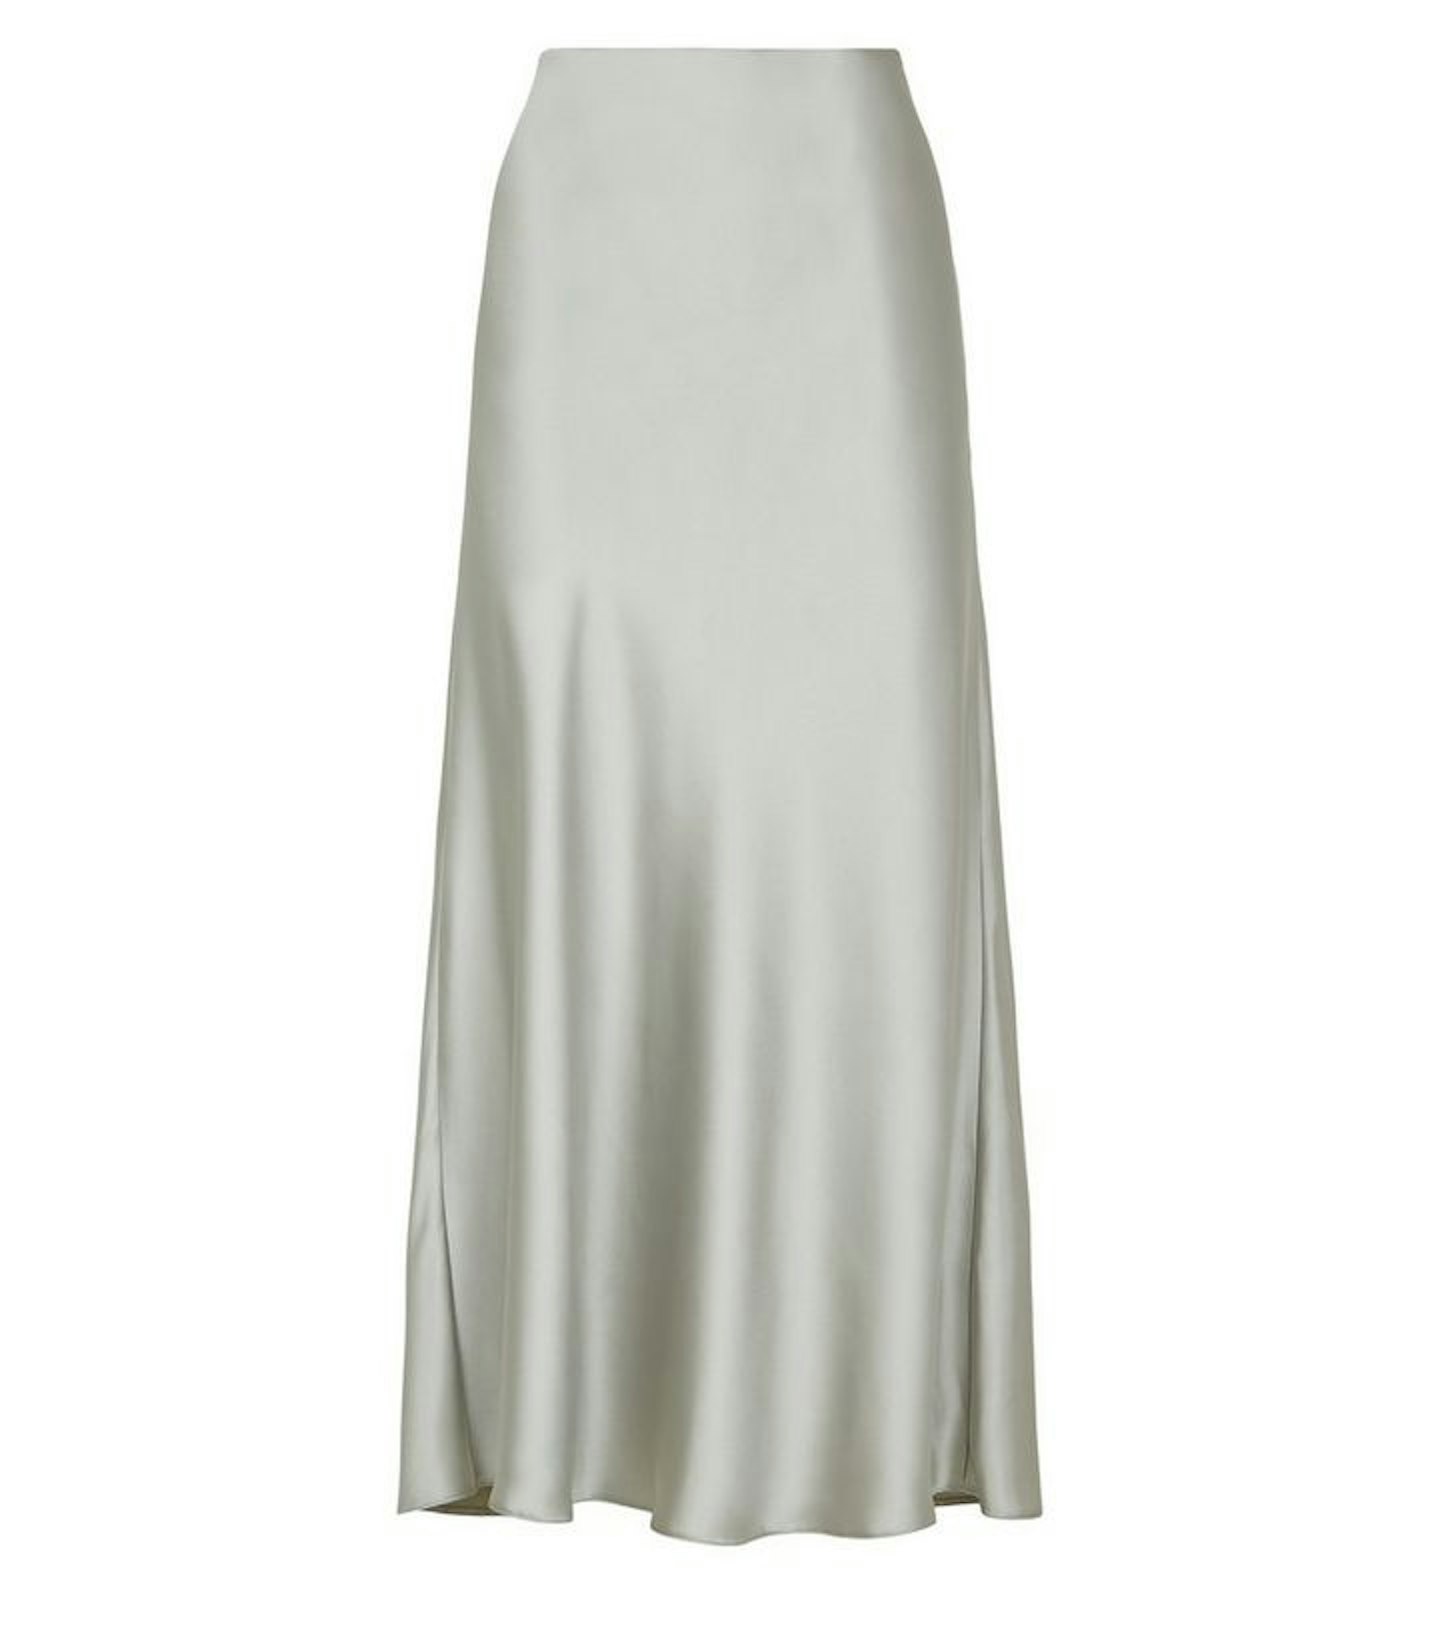 New Look, Light Green Satin Bias-Cut Midi Skirt, £19.99